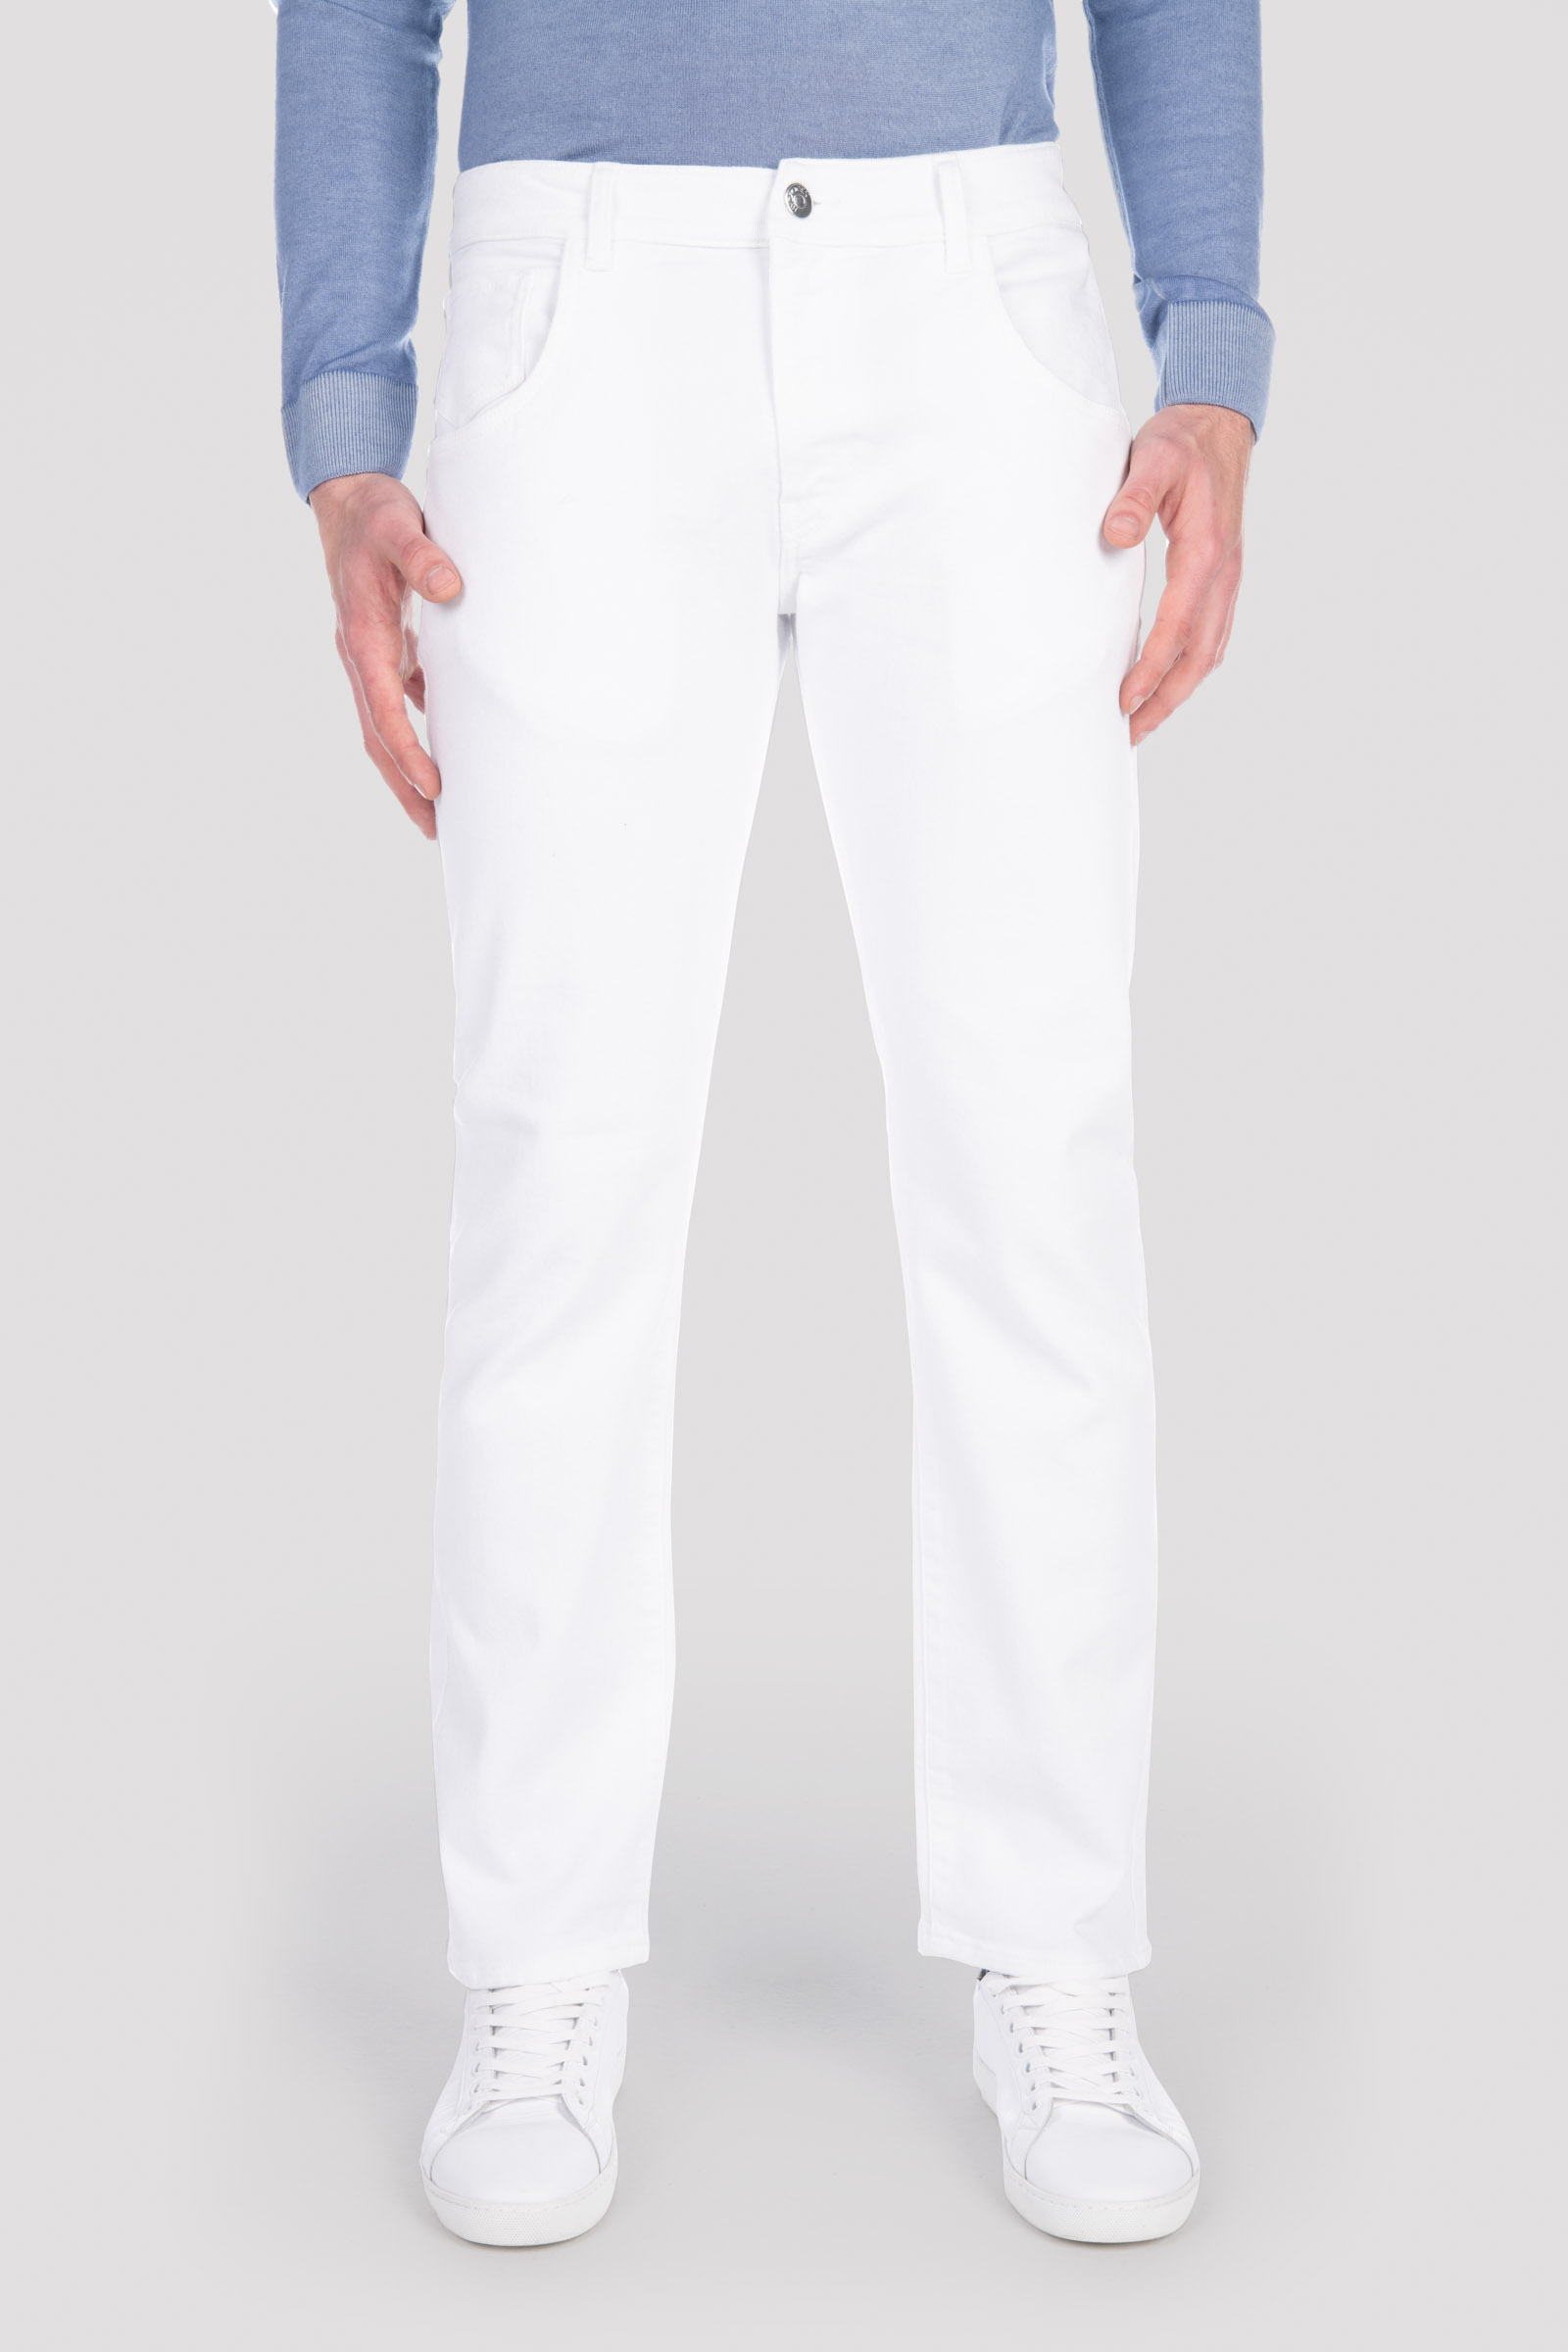 DENIM PANTS - Apparel - Outlet Hydrogen - Luxury Sportwear